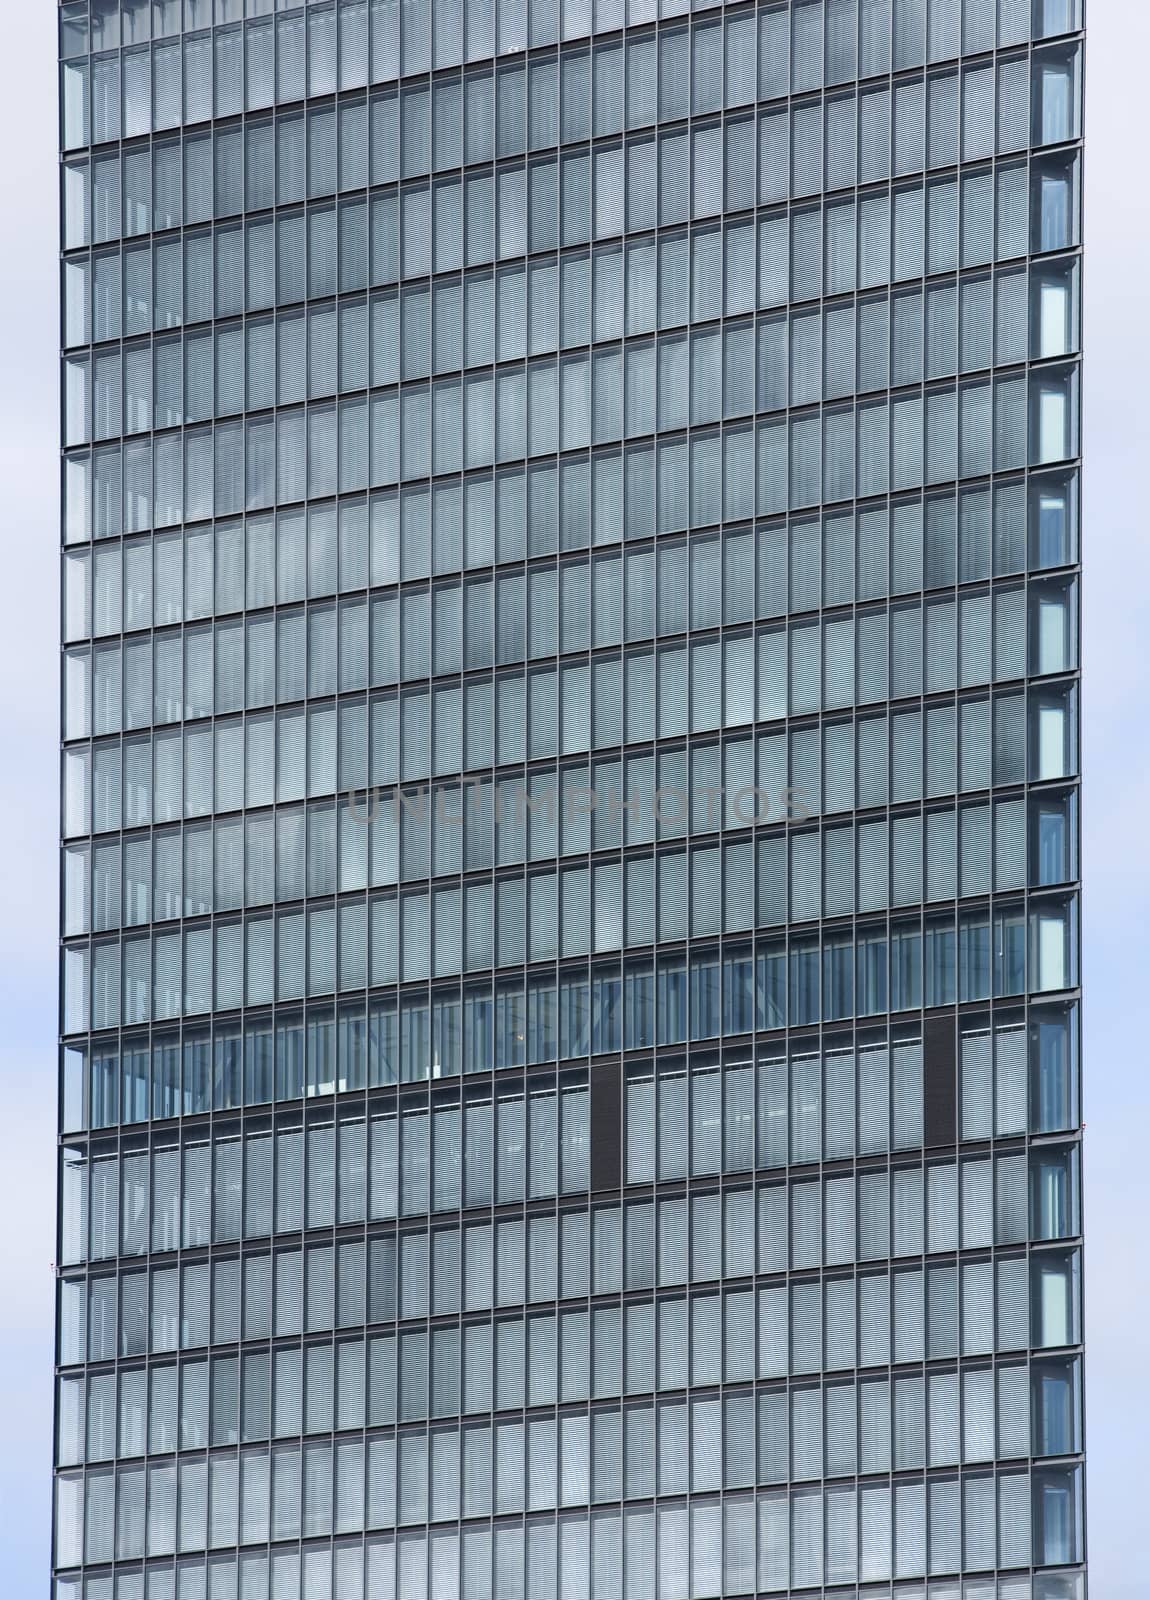 Full Frame of Office Building